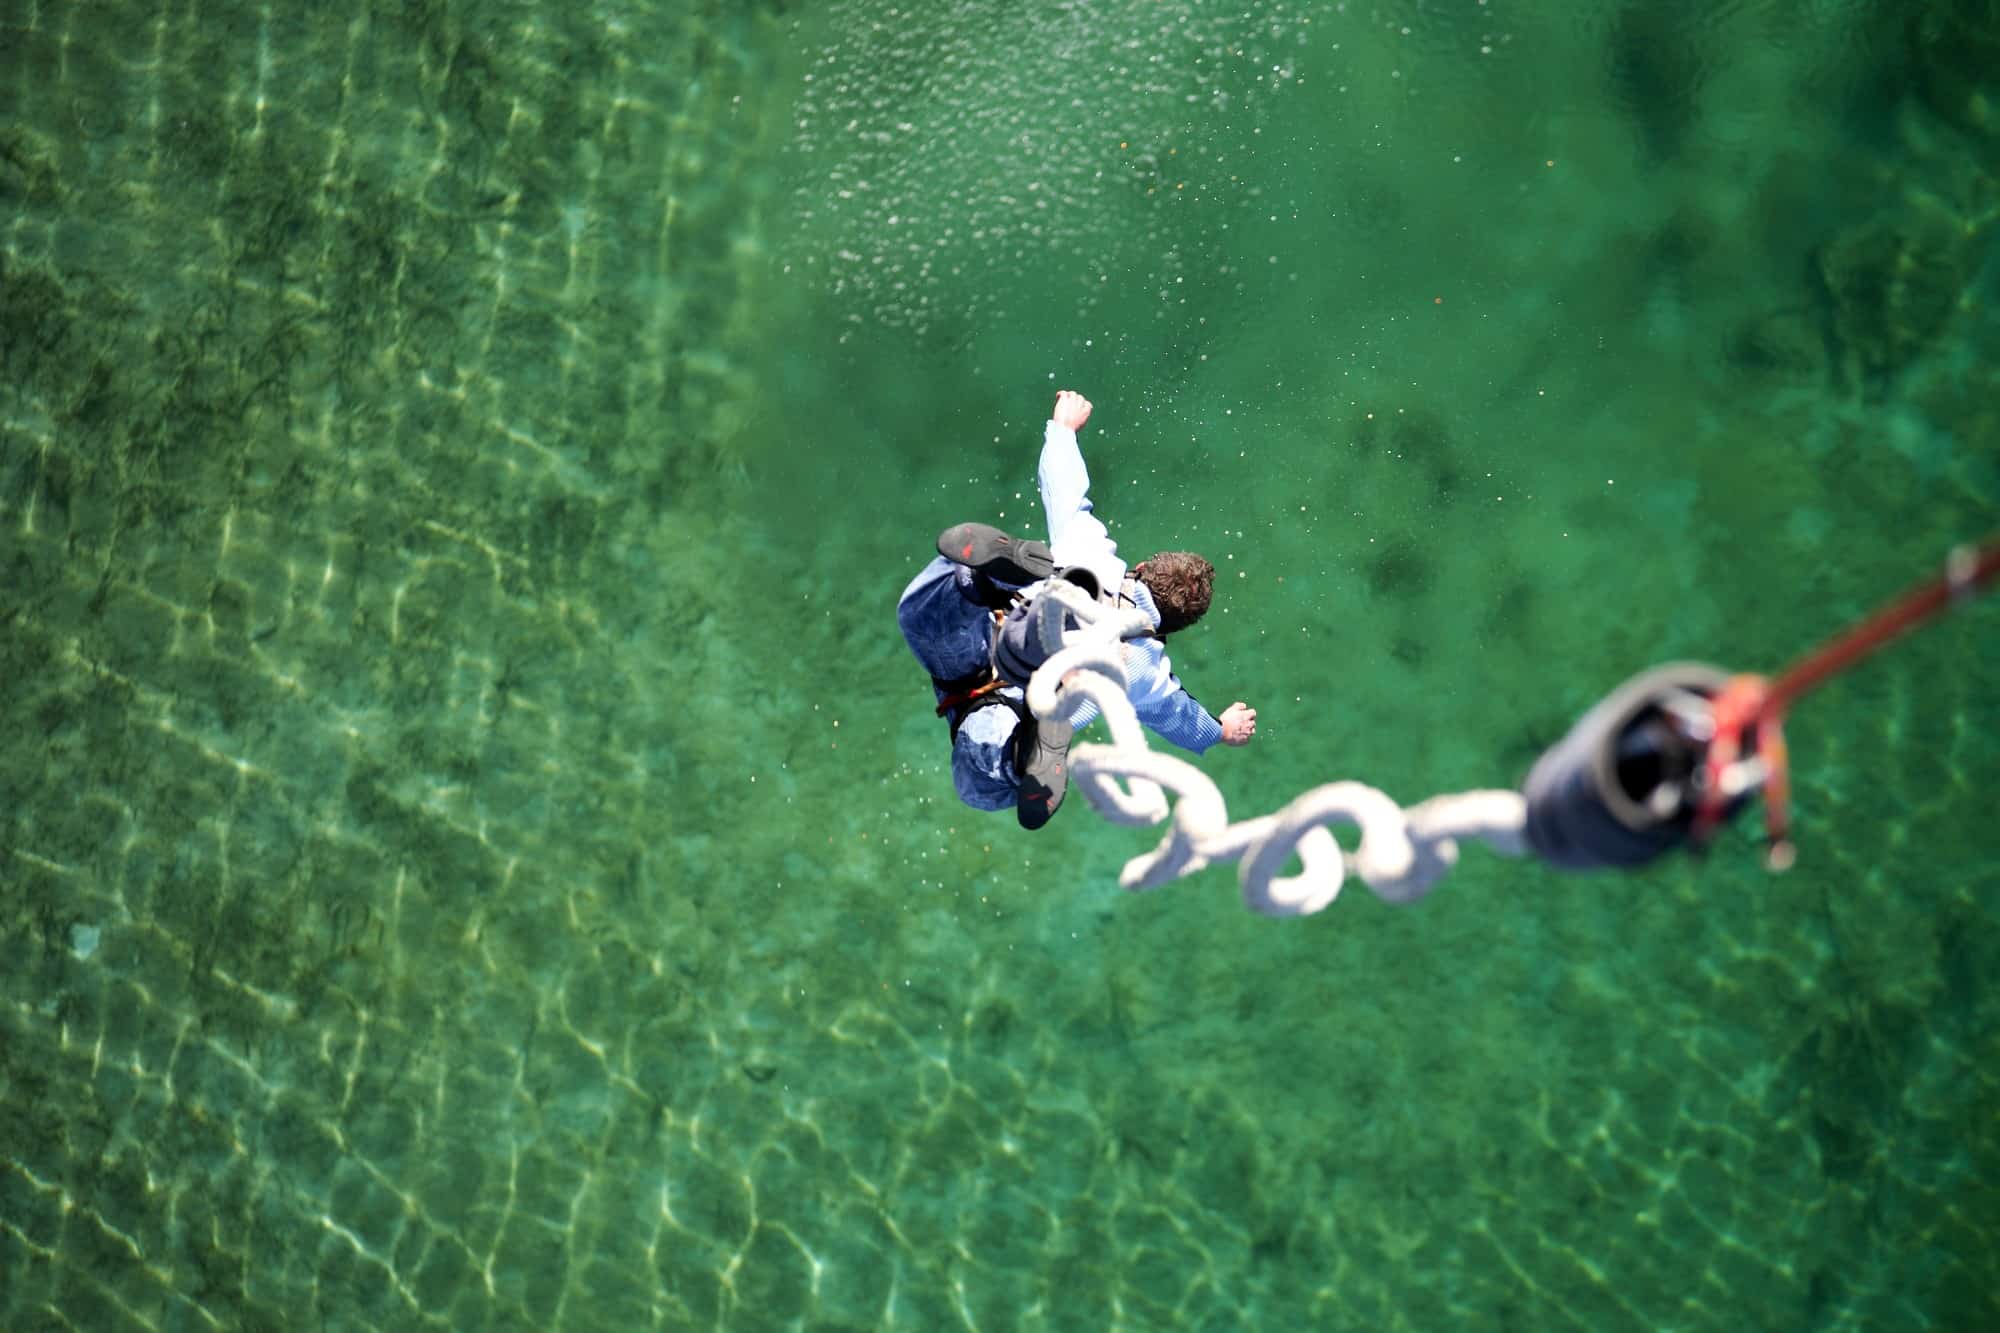 Mann springt Bungee über grünblauem Wasser der Regattaanlage Oberschleißheim